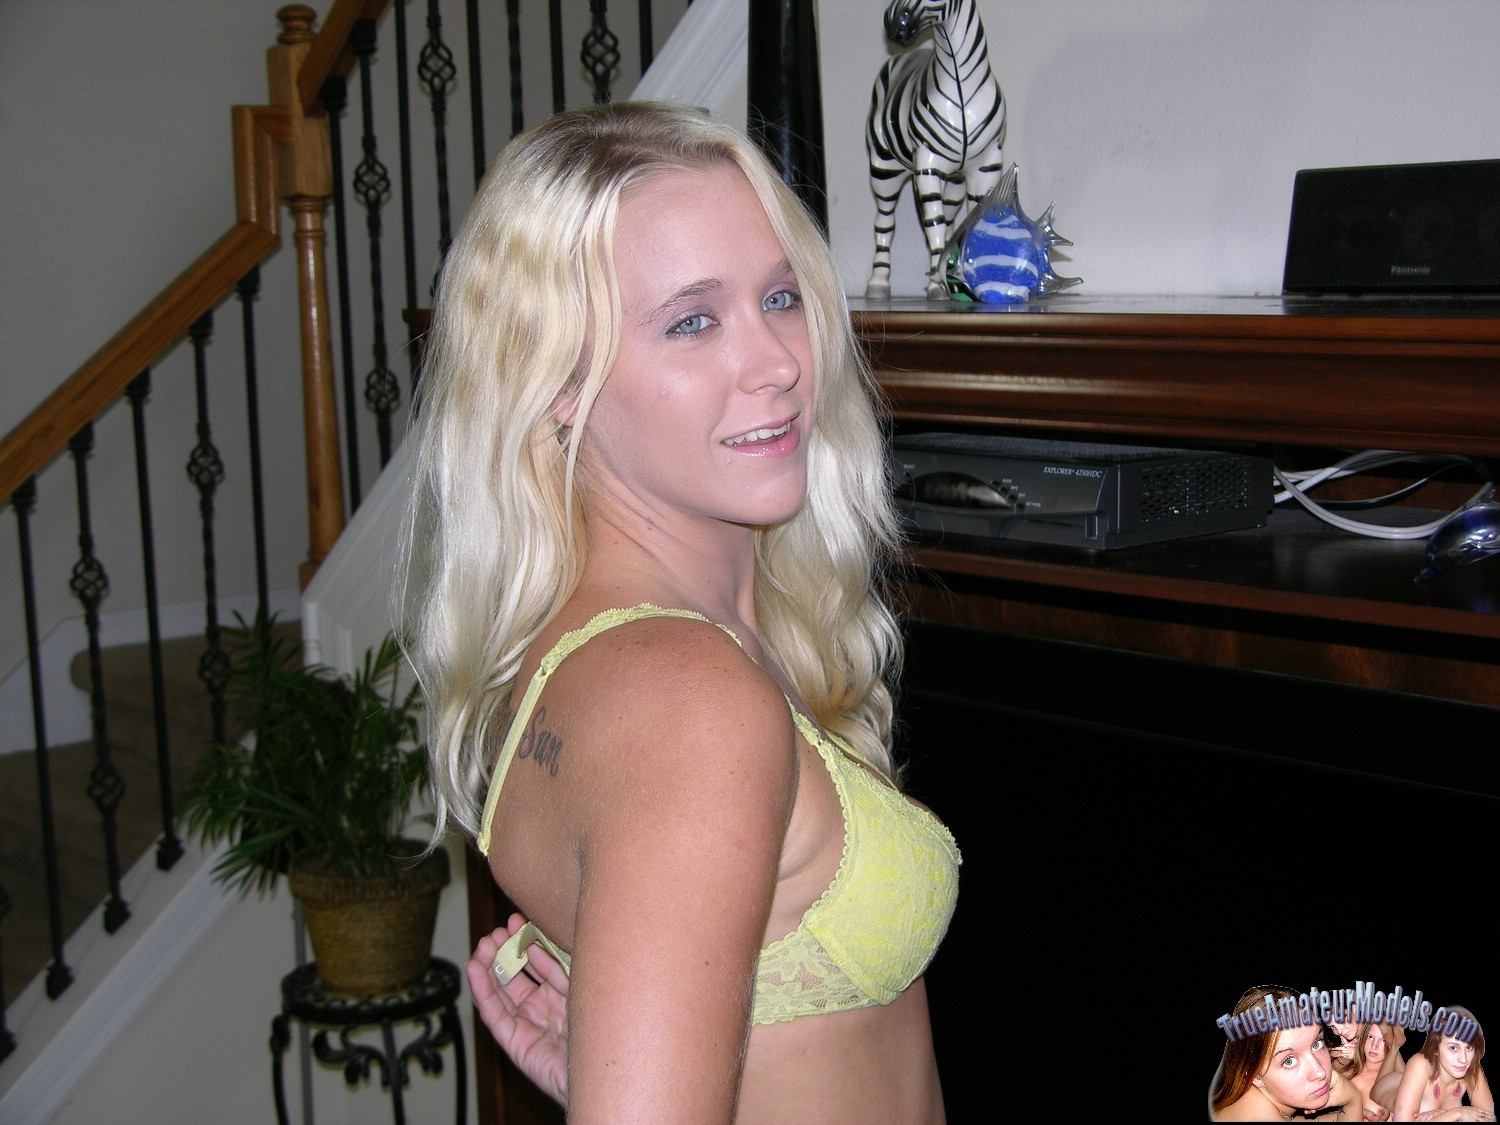 Amateur Blonde Nude Girl Modeling Nude - Julie J.